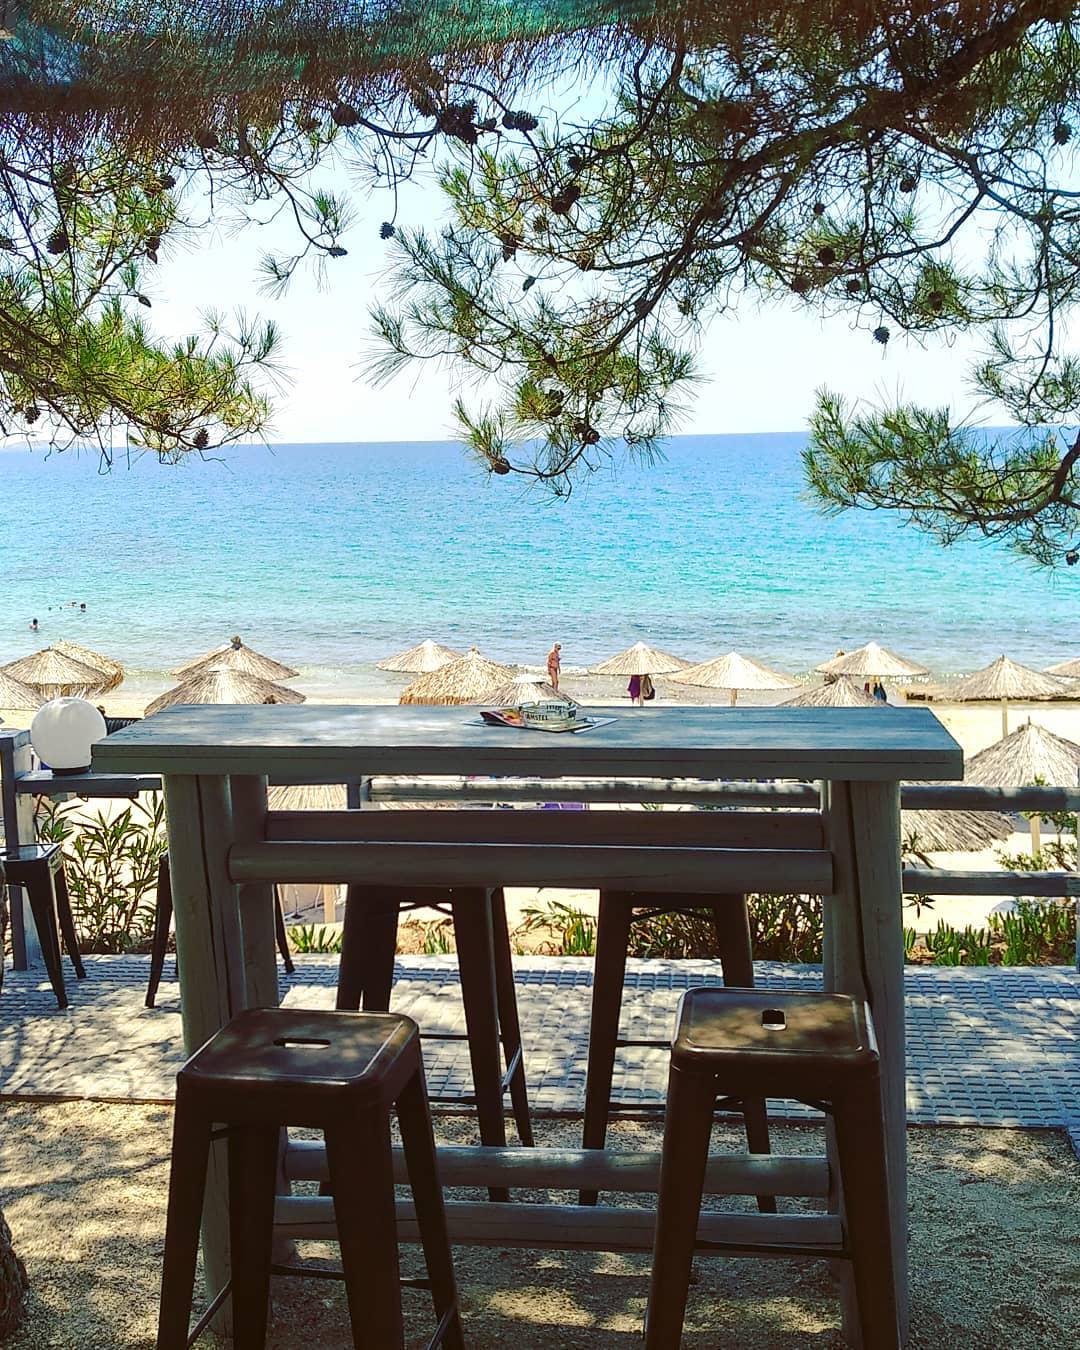 超级迷人的小岛！！！美丽而优雅！！    【情定萨索斯】   去希腊游玩，那就要去看看大海和沙滩，我